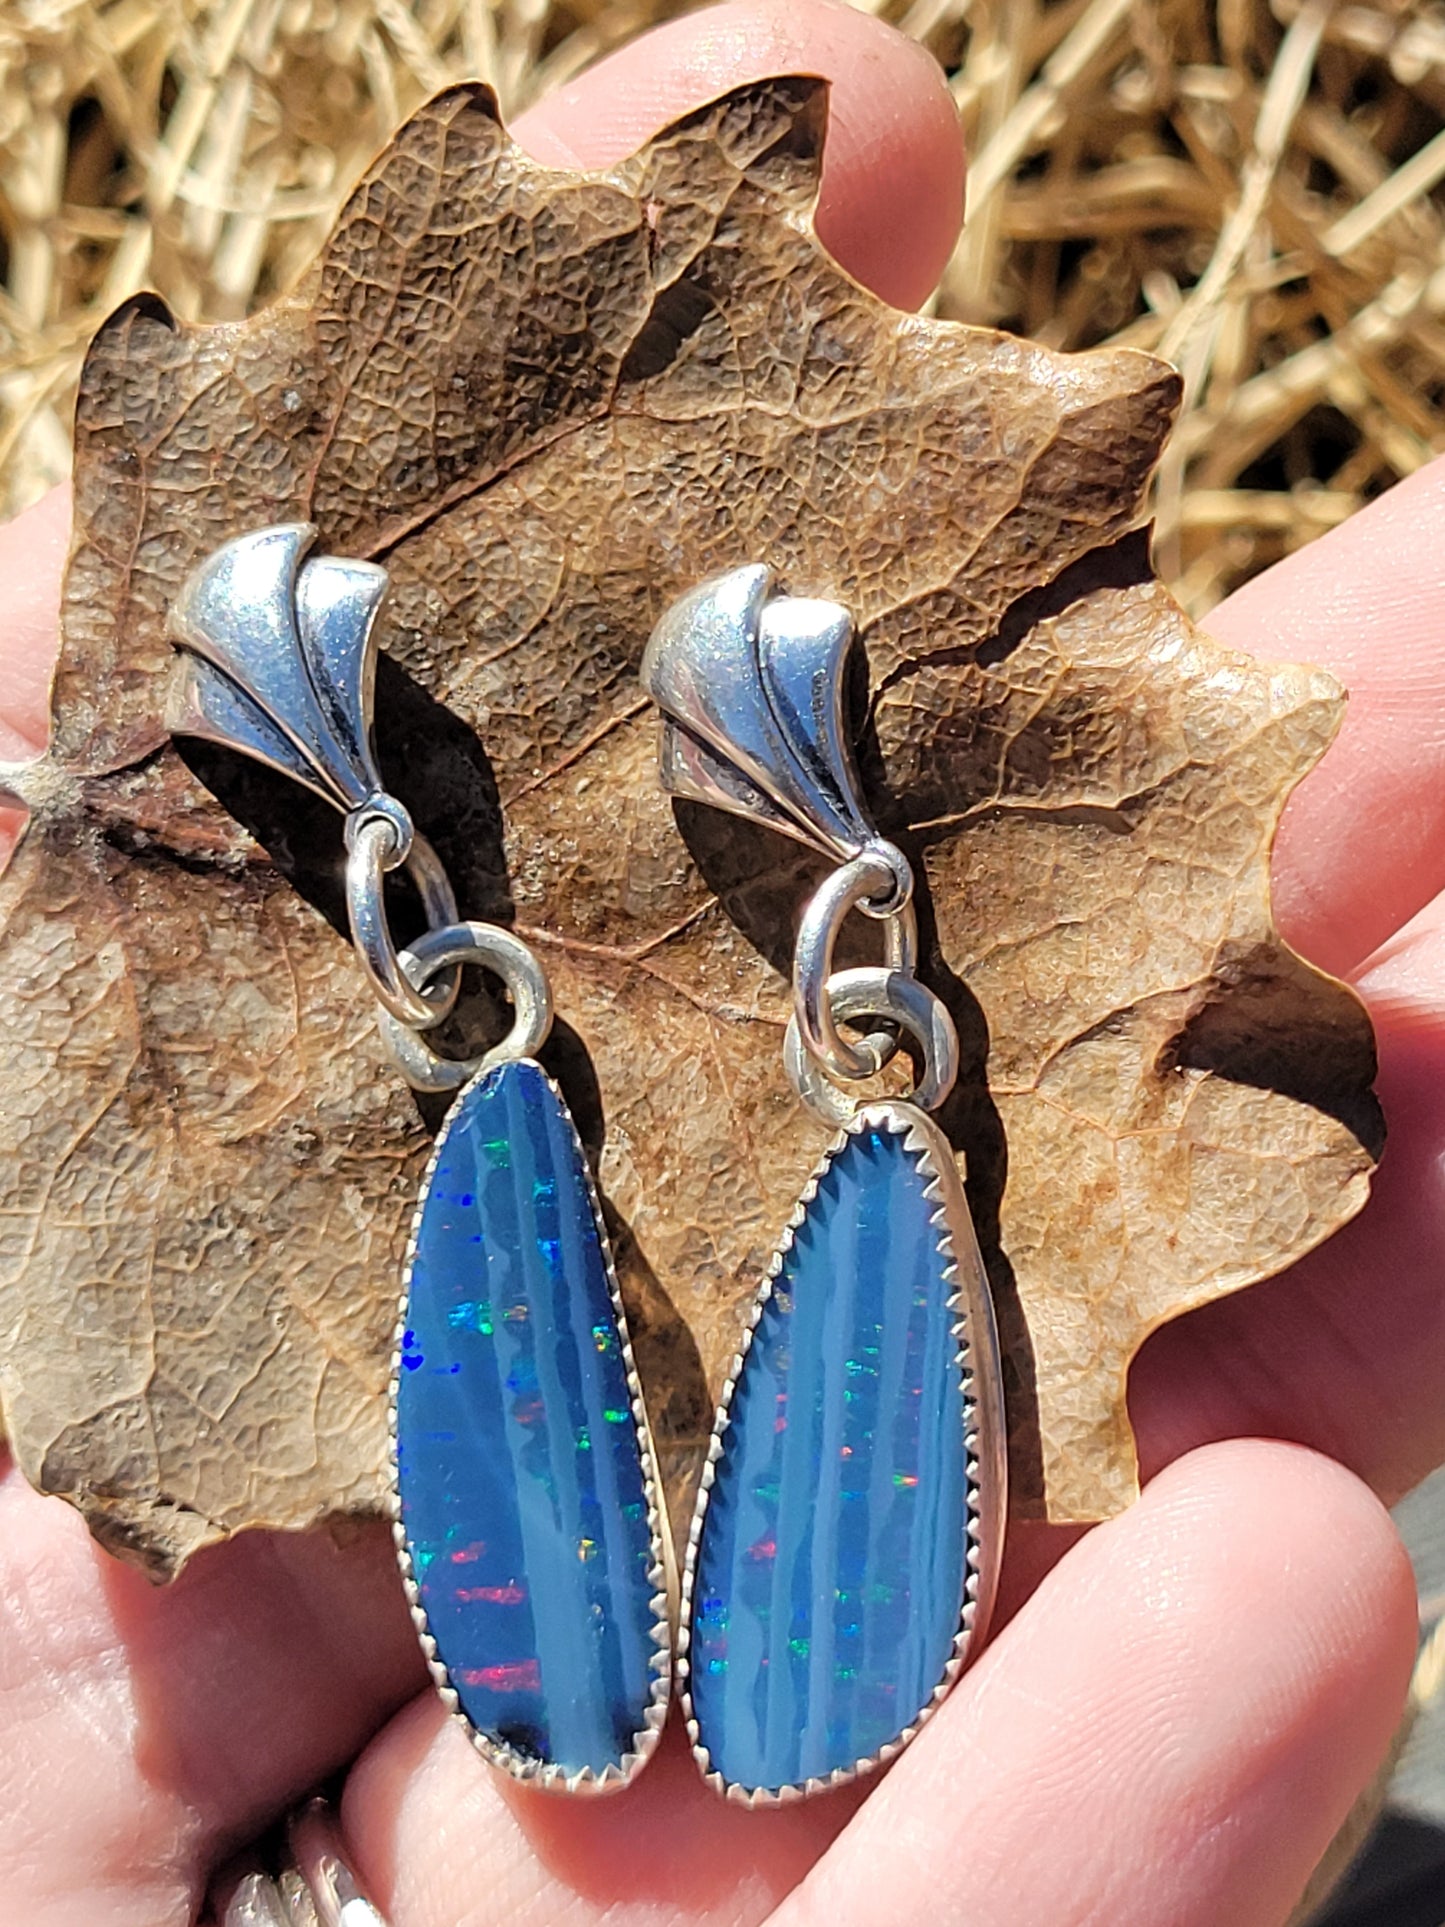 Australian Opal Drop Earrings